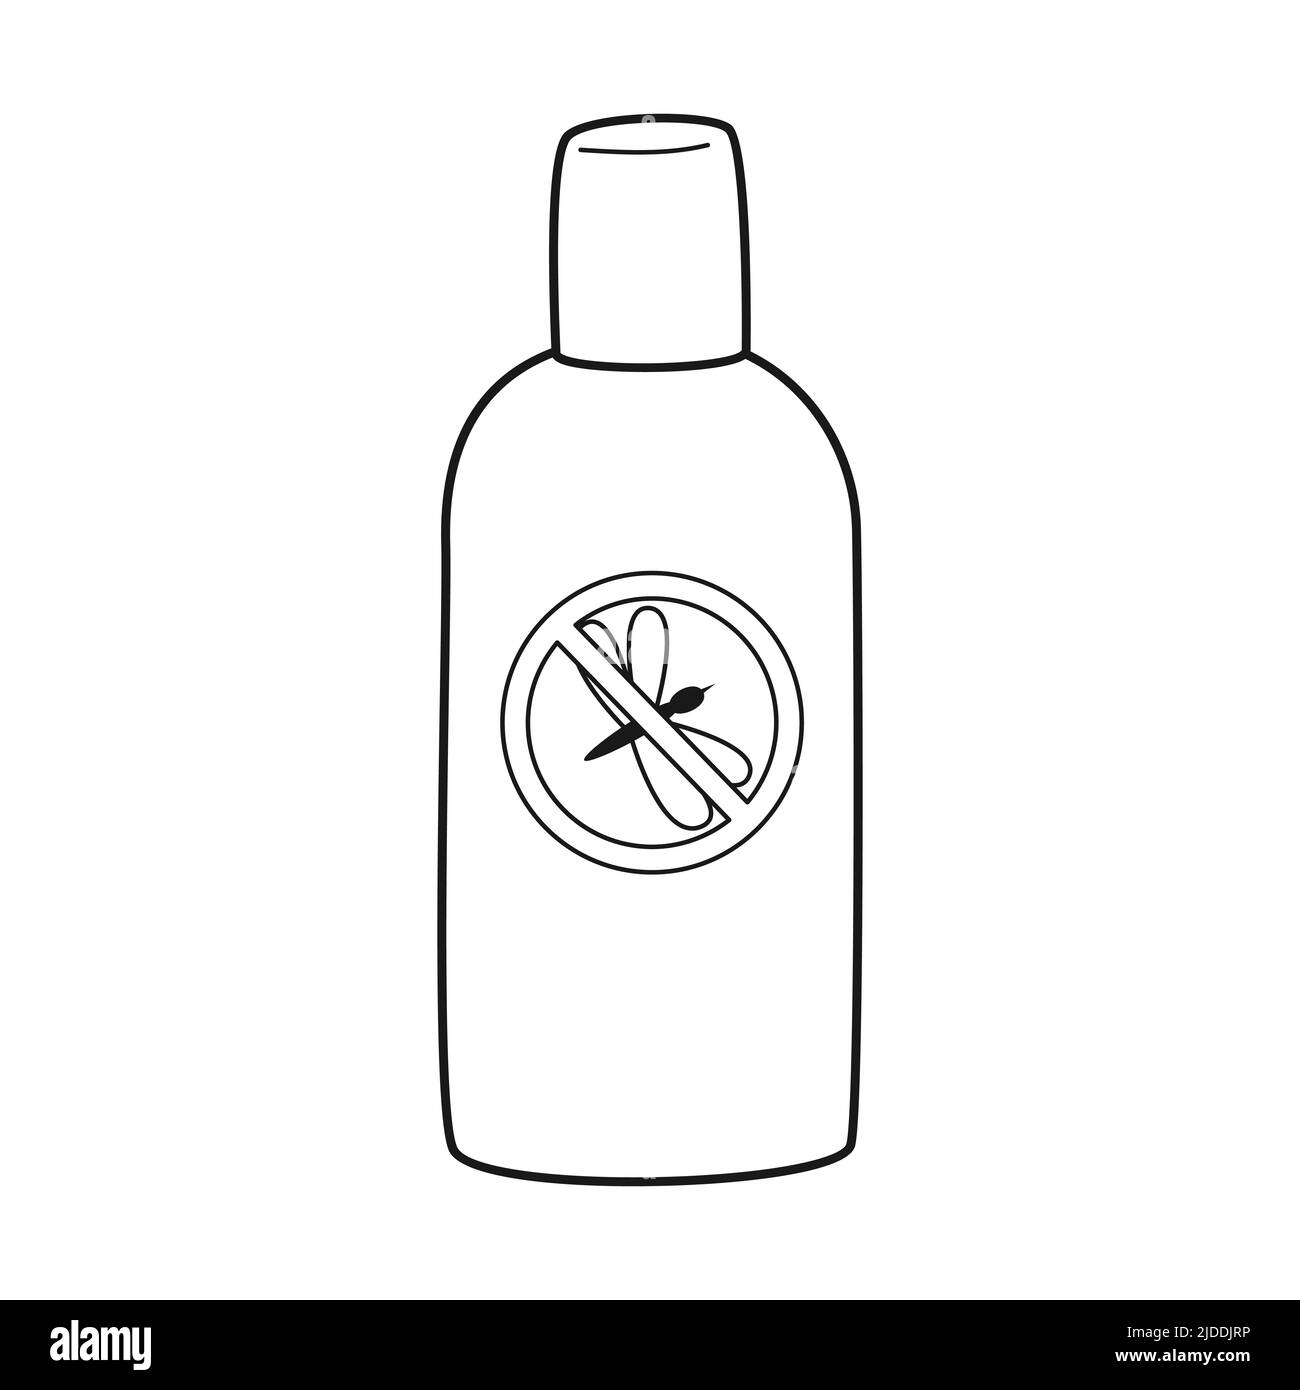 Repellente per zanzare Doodle. Tasca spray con una zanzara bloccata da un segno di divieto. Insetticida per campeggio, escursioni, viaggi. Contorno bianco nero Illustrazione Vettoriale